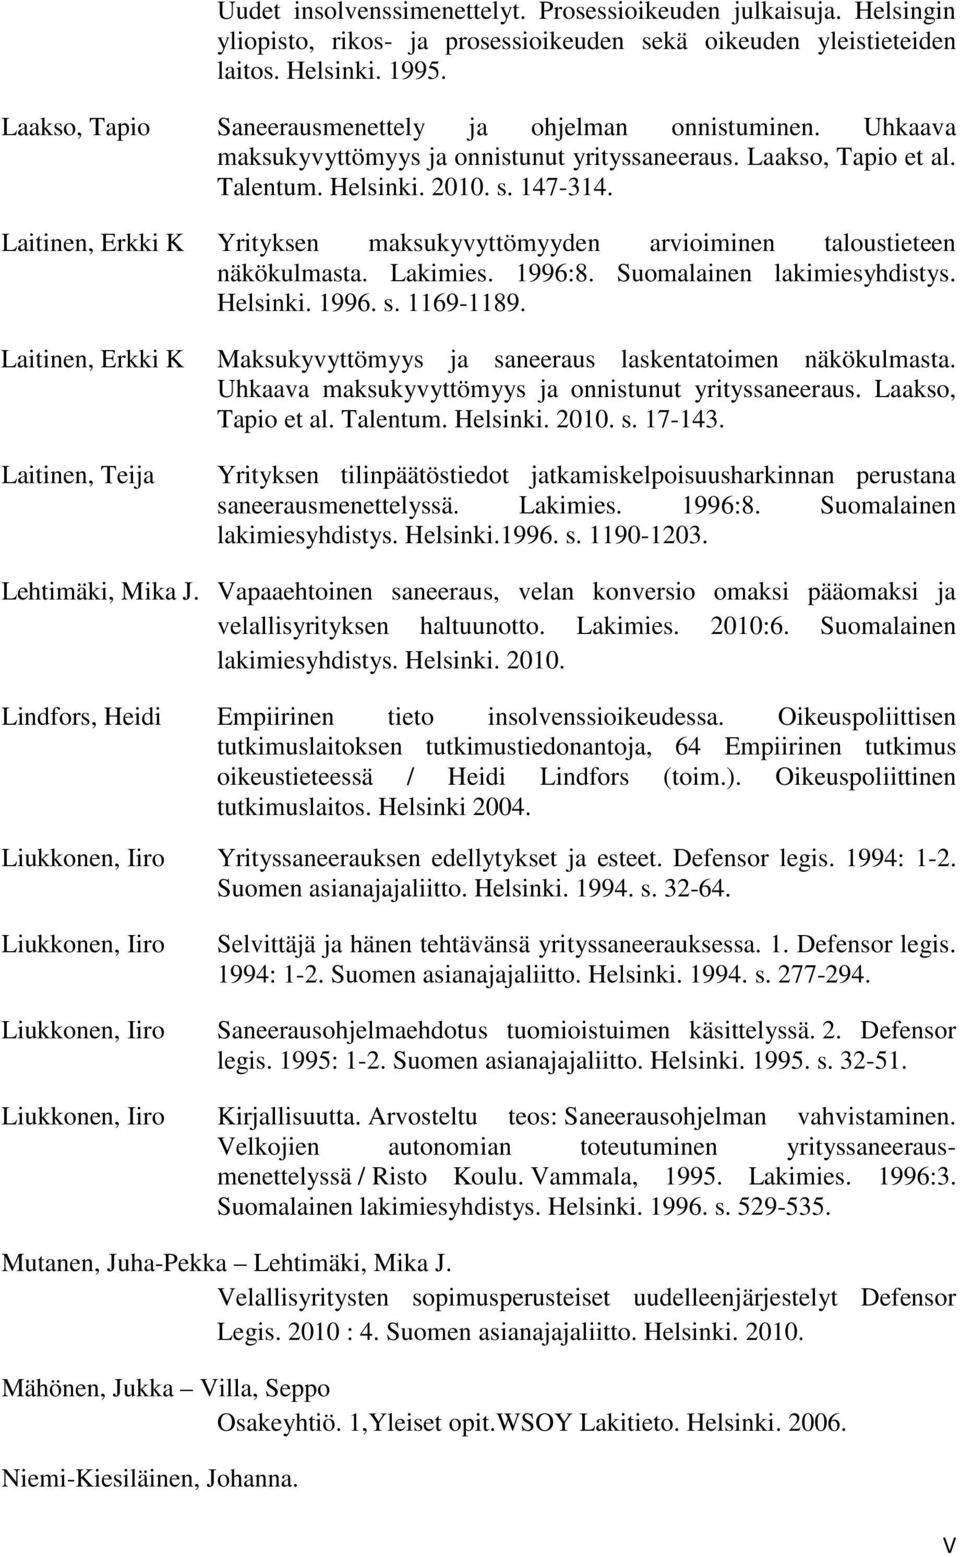 Laitinen, Erkki K Yrityksen maksukyvyttömyyden arvioiminen taloustieteen näkökulmasta. Lakimies. 1996:8. Suomalainen lakimiesyhdistys. Helsinki. 1996. s. 1169-1189.